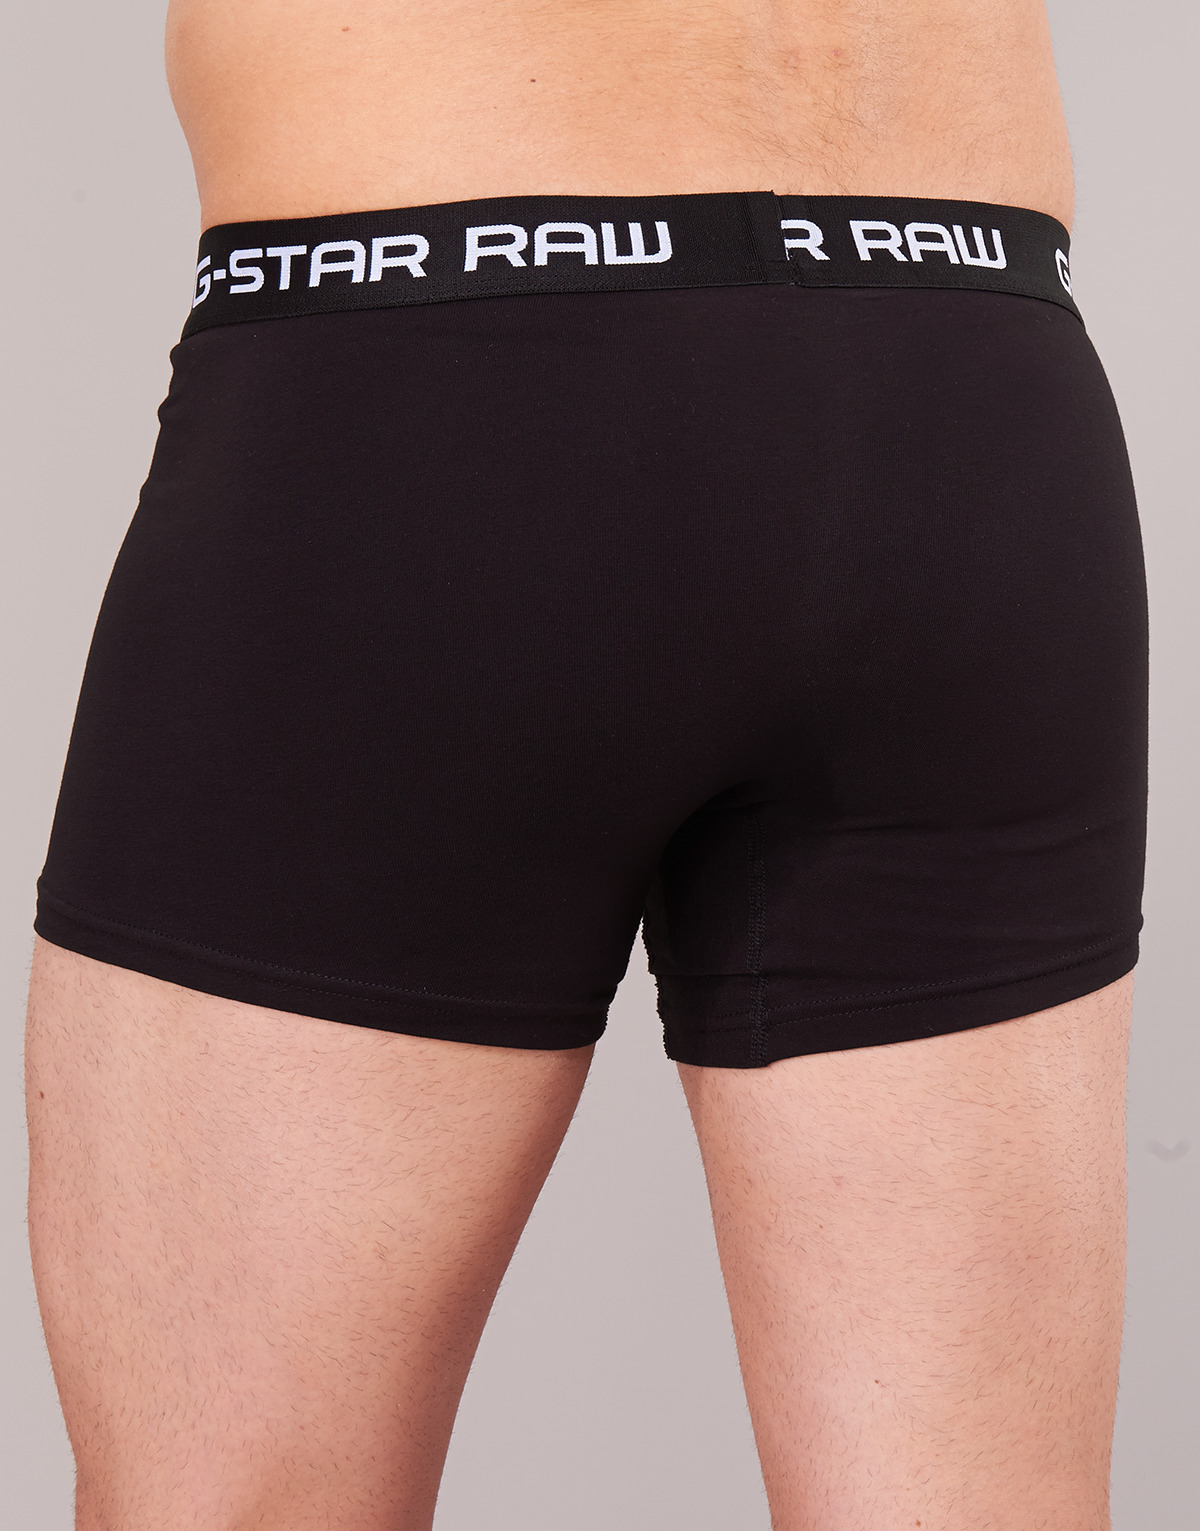 G-Star Raw Noir CLASSIC TRUNK 3 PACK sogBbX12